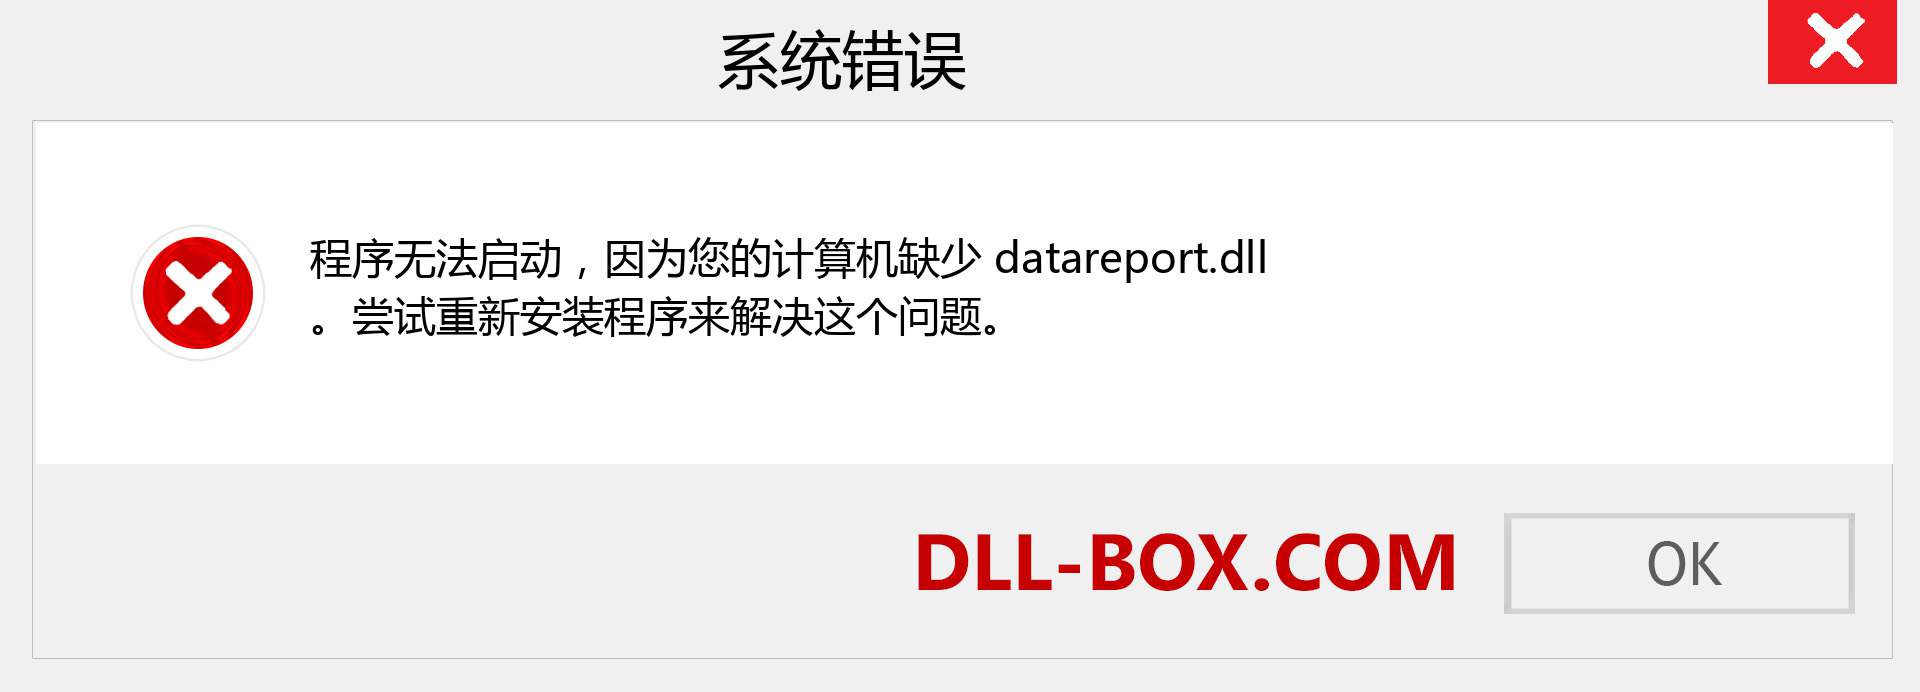 datareport.dll 文件丢失？。 适用于 Windows 7、8、10 的下载 - 修复 Windows、照片、图像上的 datareport dll 丢失错误